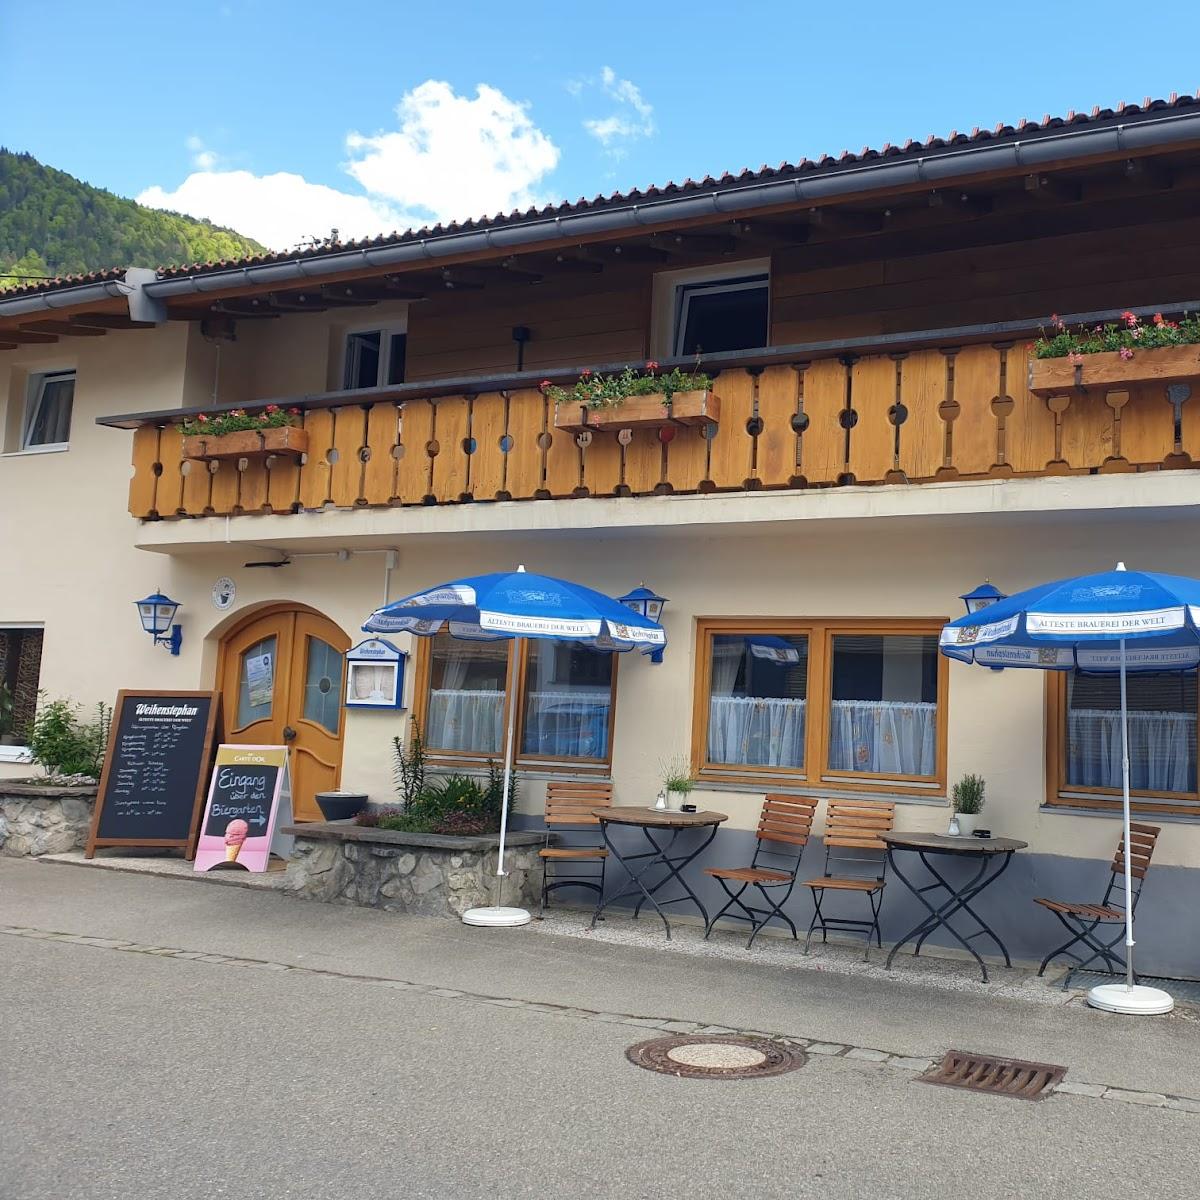 Restaurant "Hexenstüber‘l" in Oberau